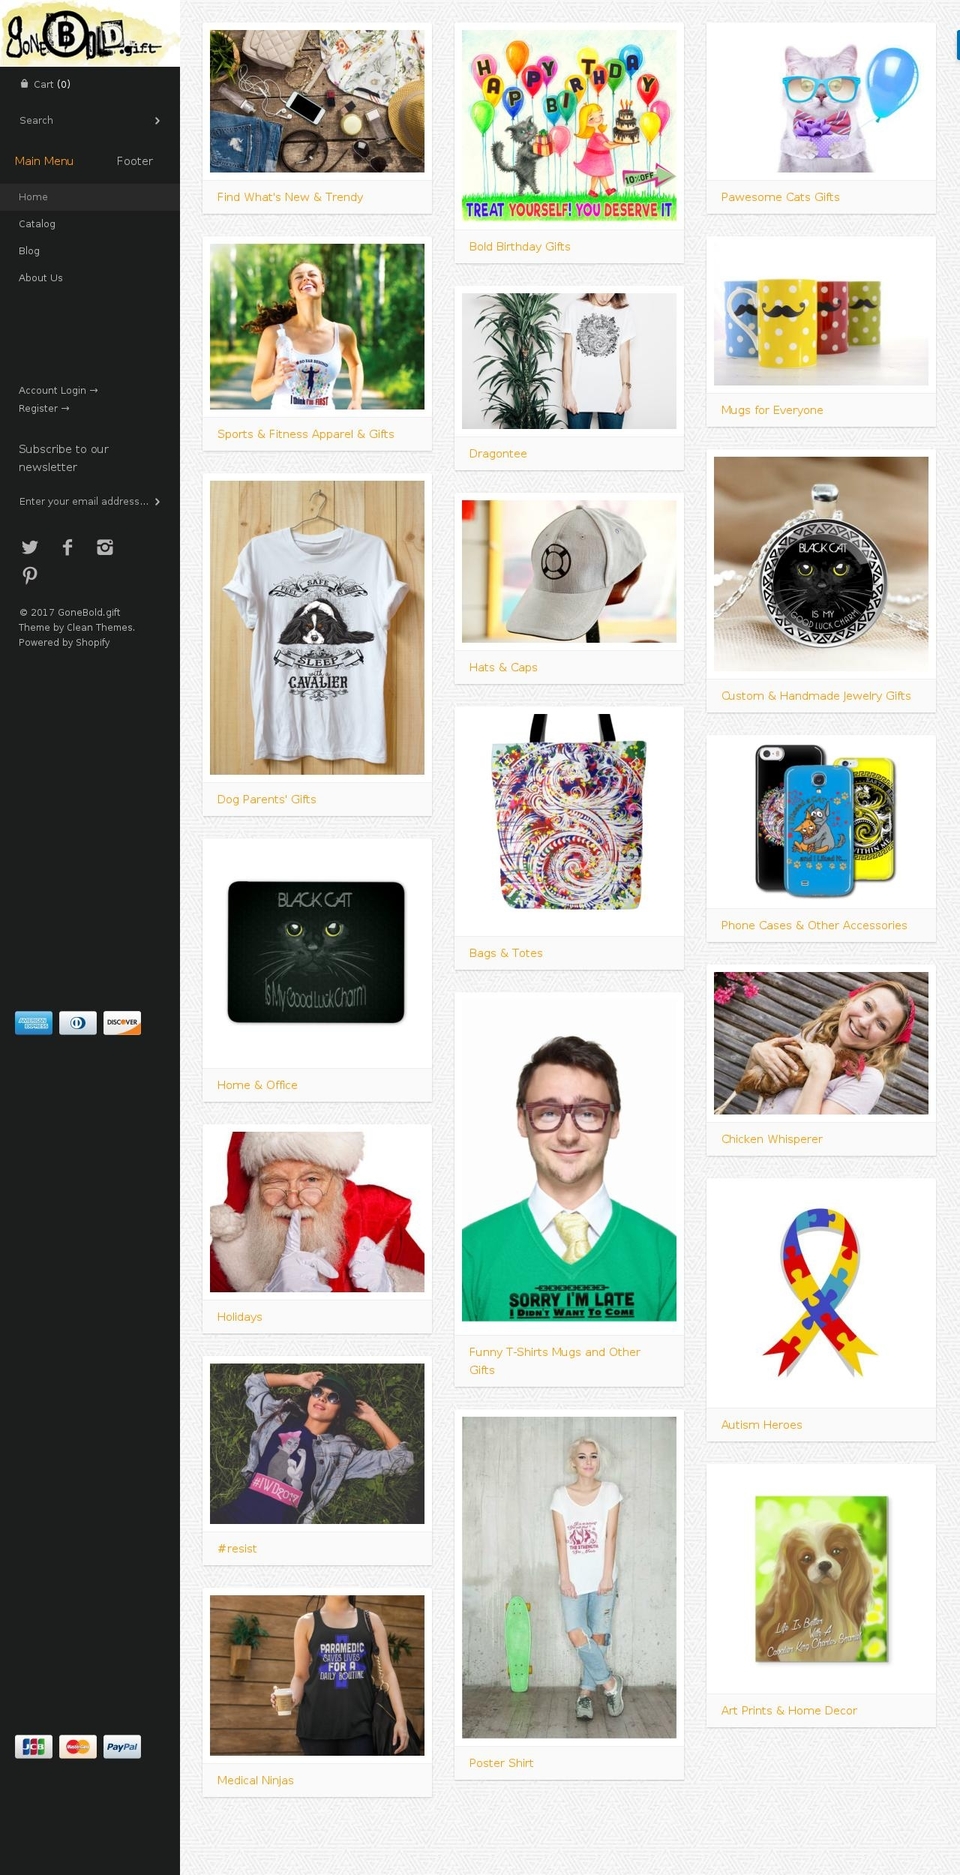 gonebold.gift shopify website screenshot